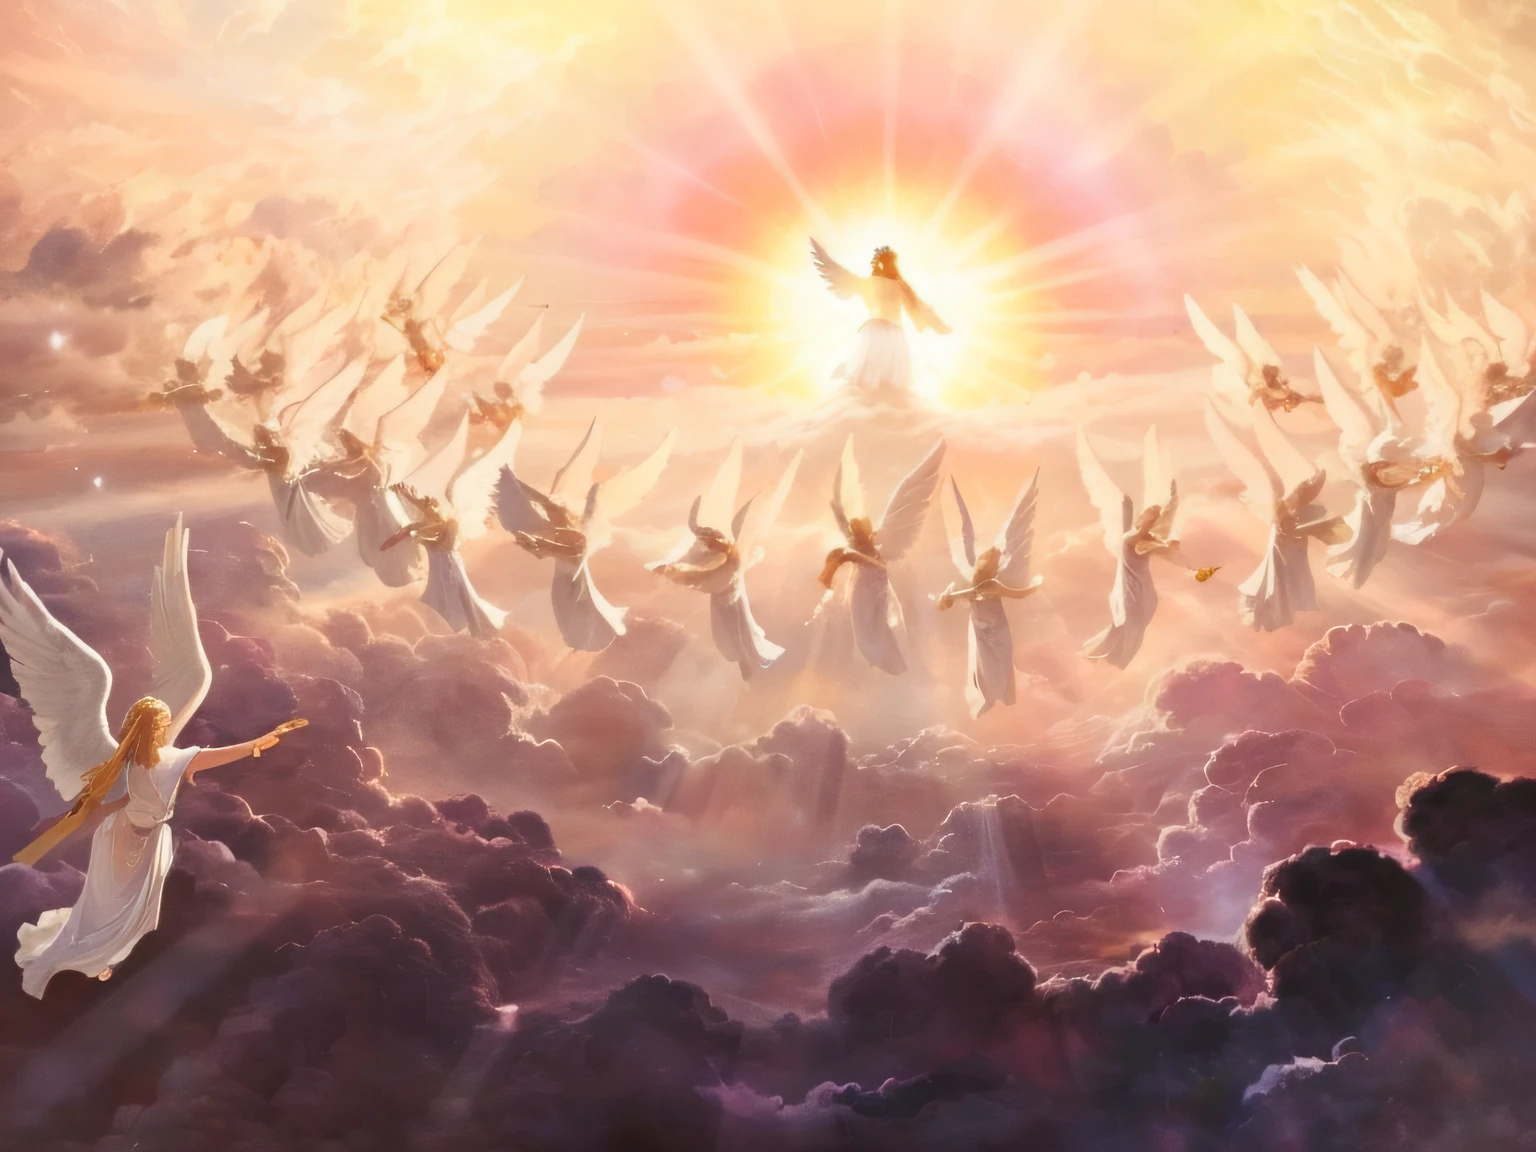 pintura de anjos voando no céu com um sol brilhando atrás deles, anjos no céu, arrebatamento celestial, Segunda vinda, entre nuvens celestiais iluminadas pelo sol, paraíso!!!!!!!!, O Arrebatamento, she is arriving paraíso, Torradeiras voadoras no céu, anjos protegendo um homem de oração, the gates of paraíso, reino divino dos deuses, representação bíblica épica